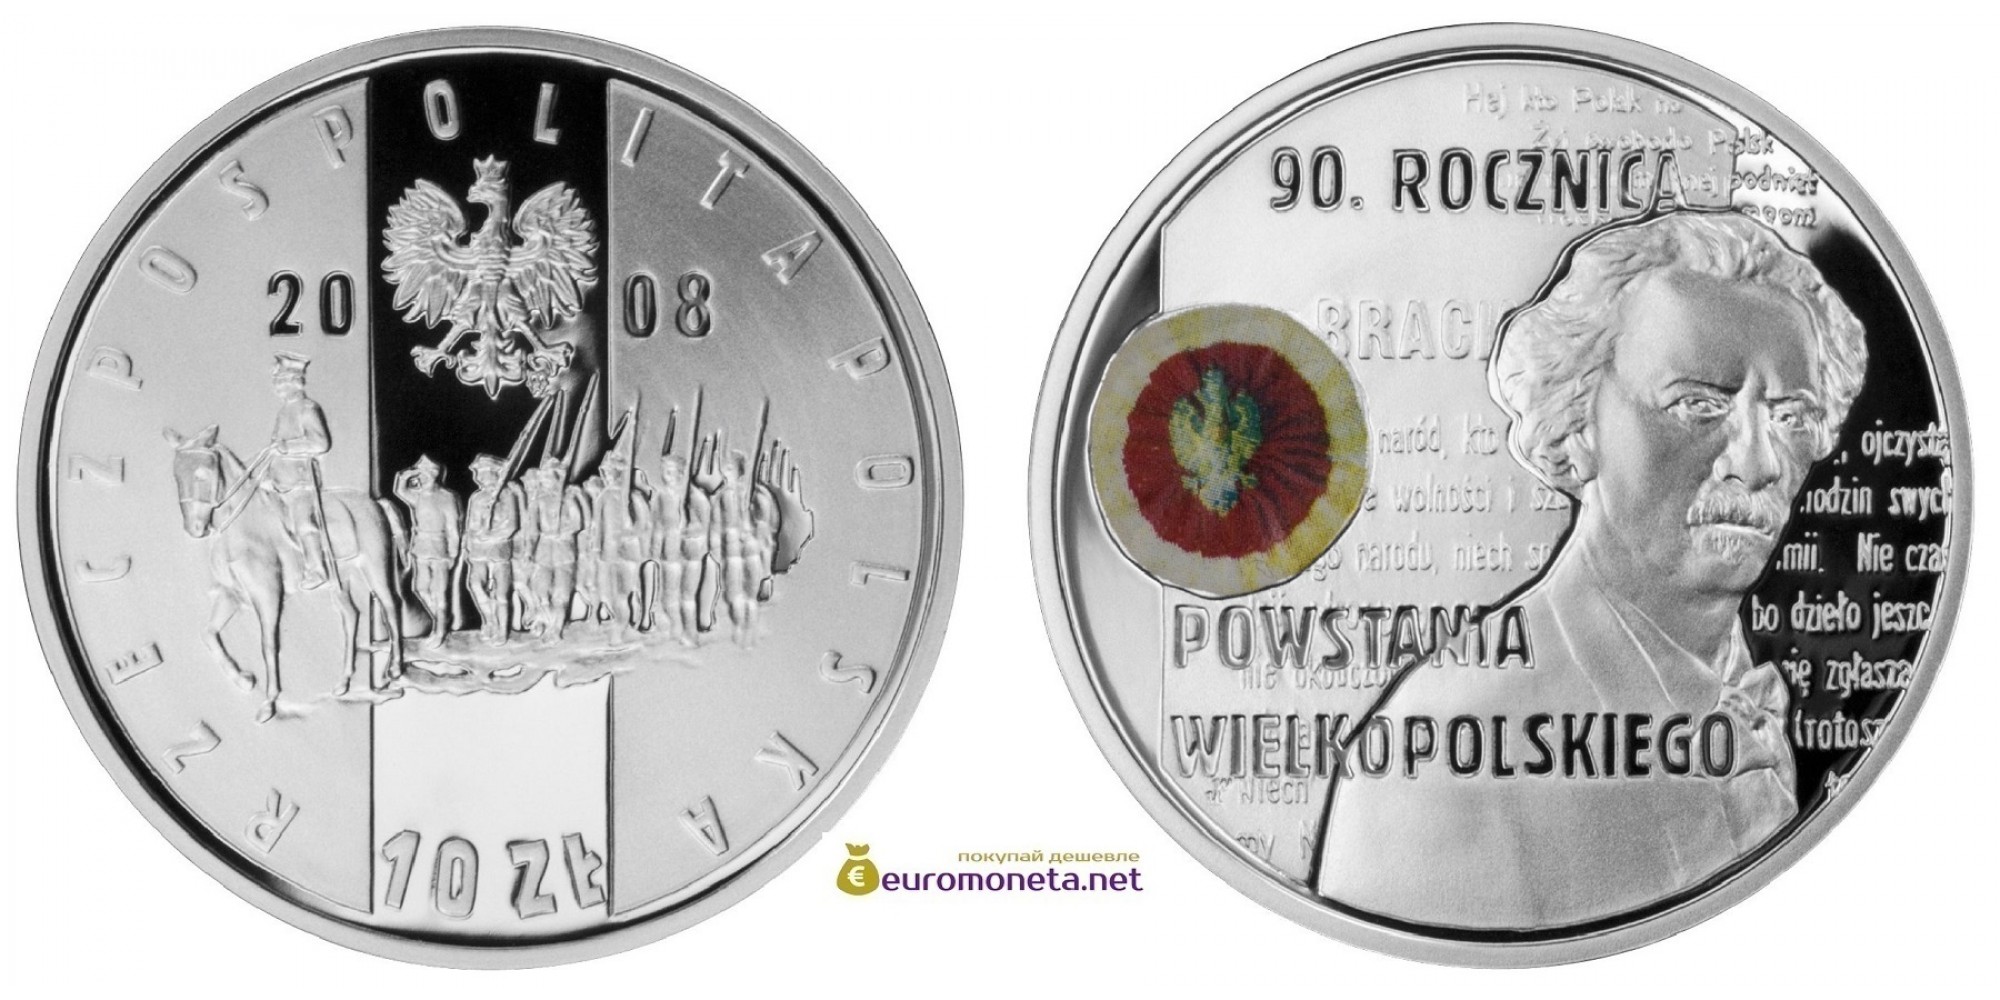 Польша 10 злотых 2008 год 90-летие Великопольского восстания серебро пруф proof